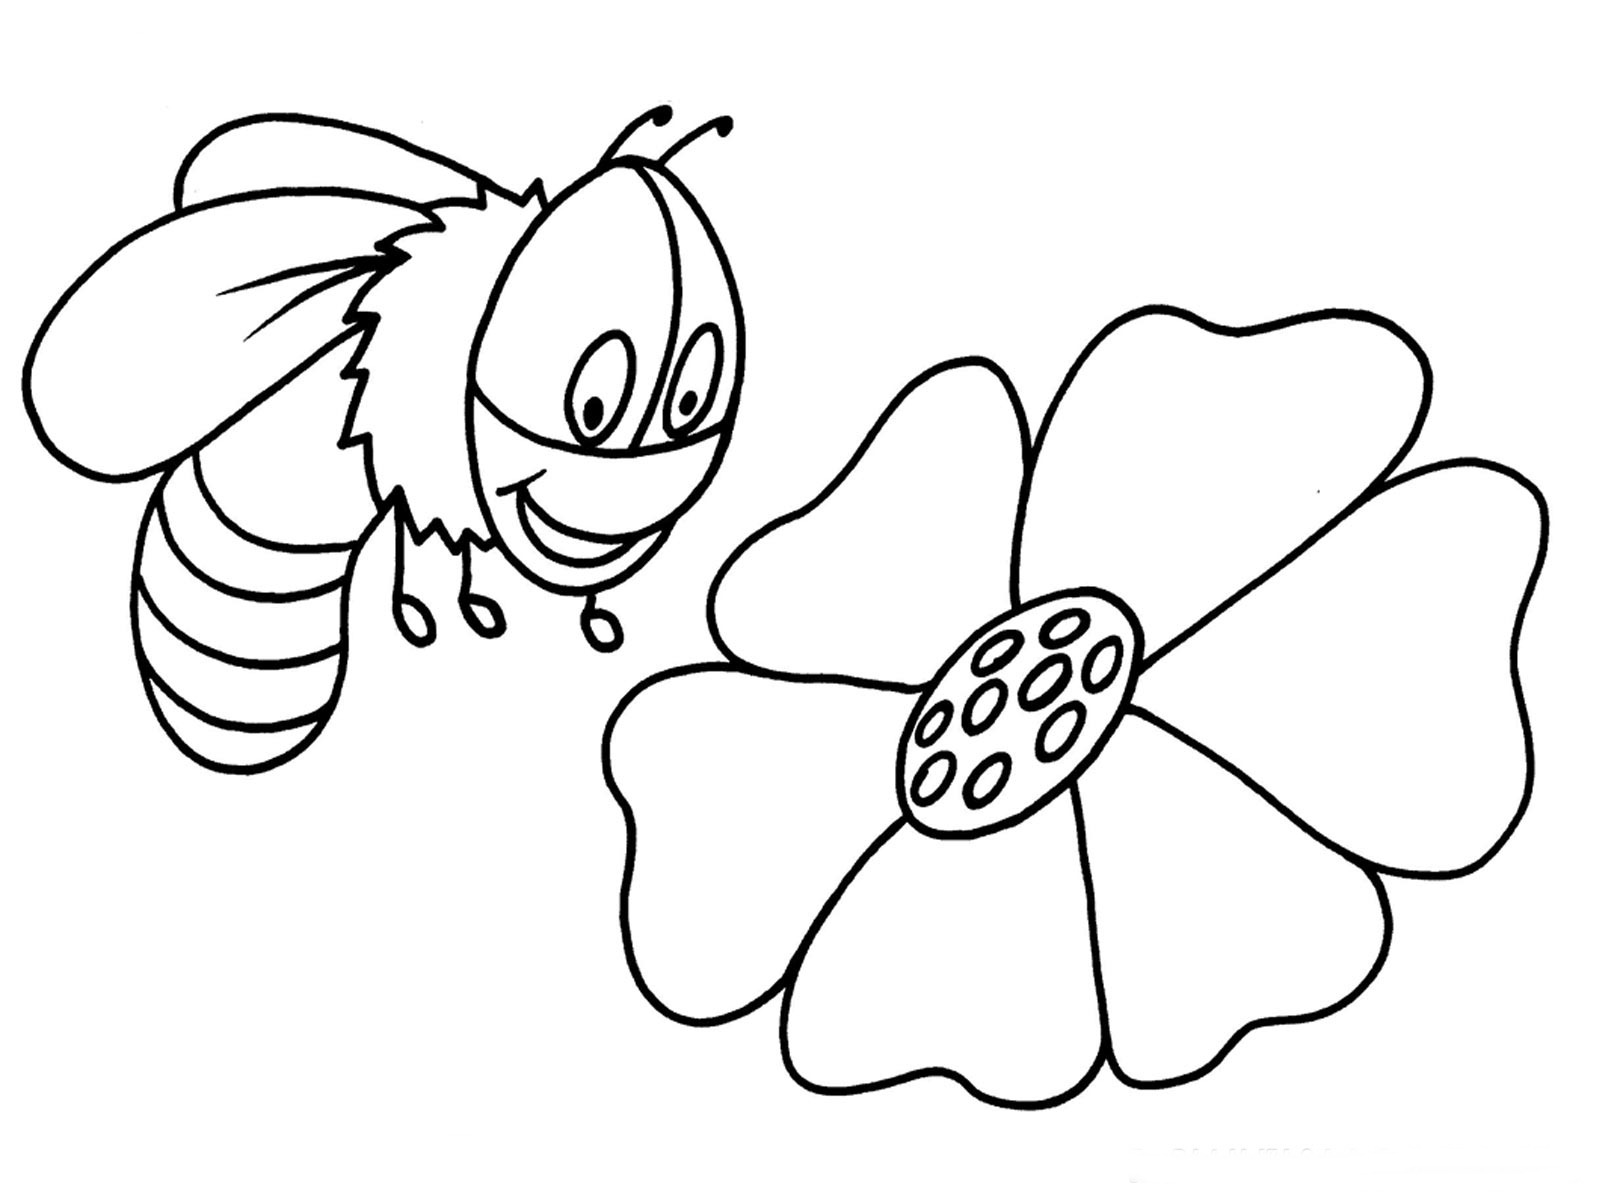 Пчелка раскраска распечатать. Пчела раскраска. Пчелка раскраска для малышей. Раскраска пчёлка для детей. Пчела раскраска для детей.